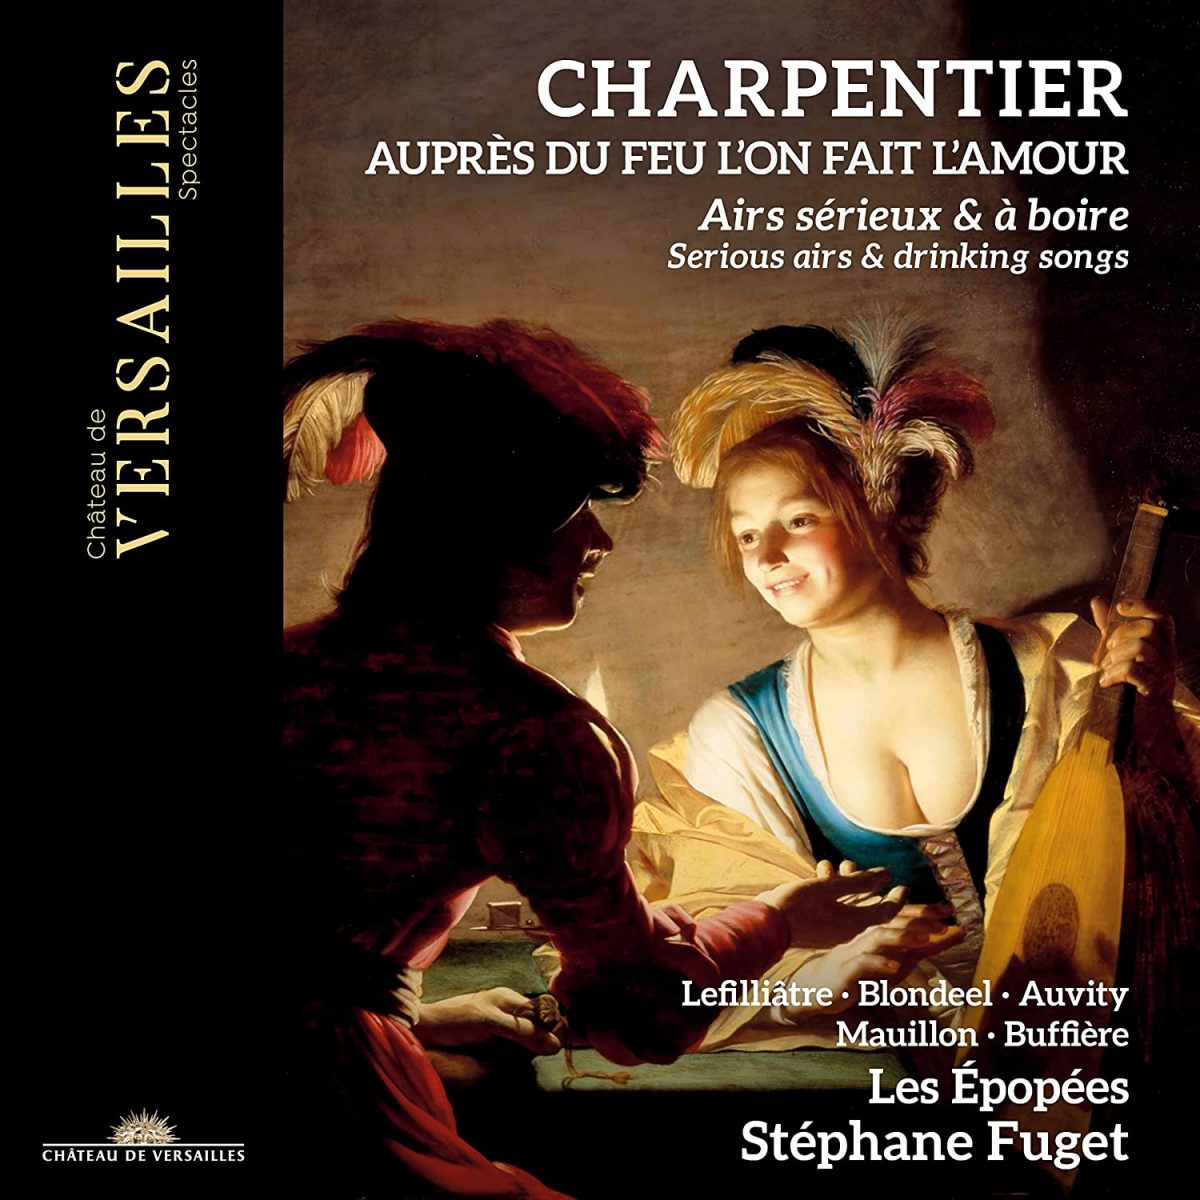 CD cover Charpentier Aupres du feu l'on fait l'amour